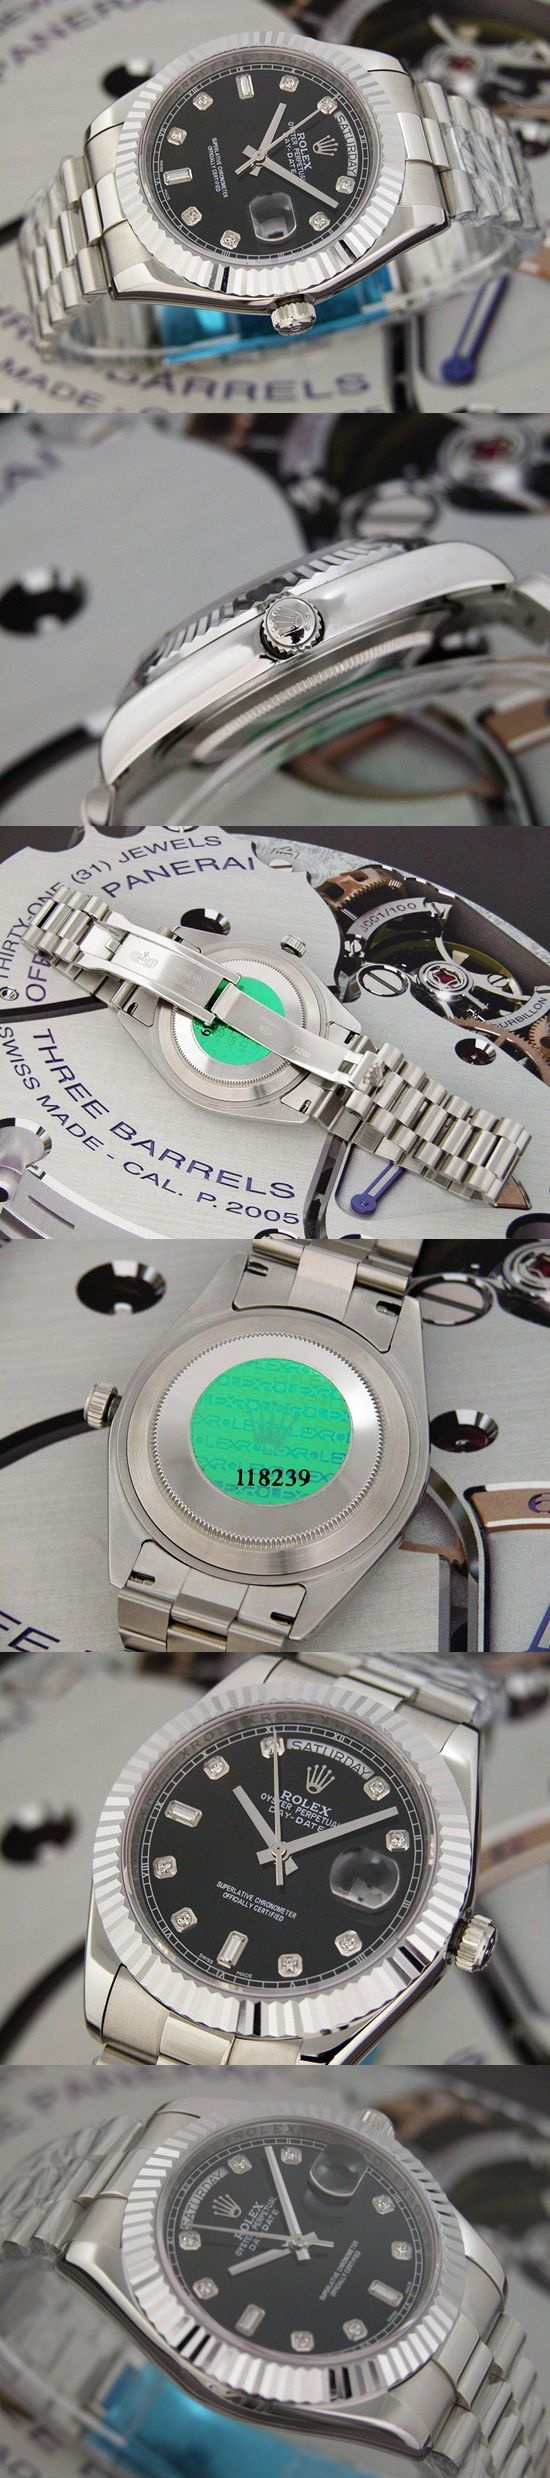 おしゃれなブランド時計がロレックス-デイデイト-ROLEX-118239-97-男性用を提供します.